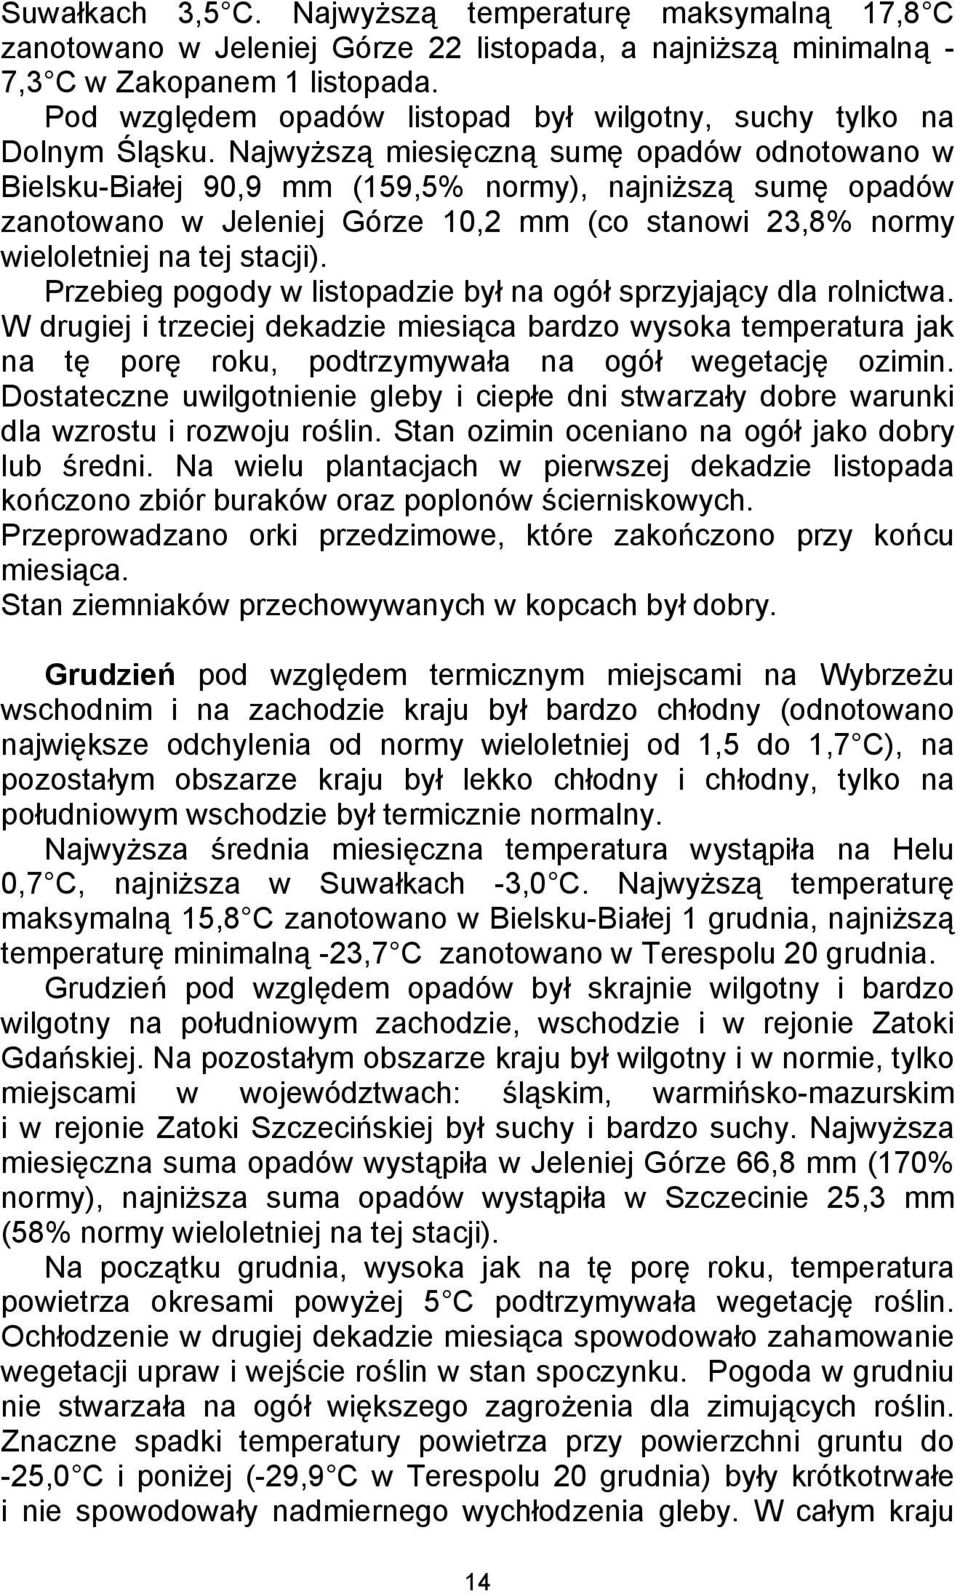 Najwyższą miesięczną sumę opadów odnotowano w Bielsku-Białej 90,9 mm (159,5% normy), najniższą sumę opadów zanotowano w Jeleniej Górze 10,2 mm (co stanowi 23,8% normy wieloletniej na tej stacji).